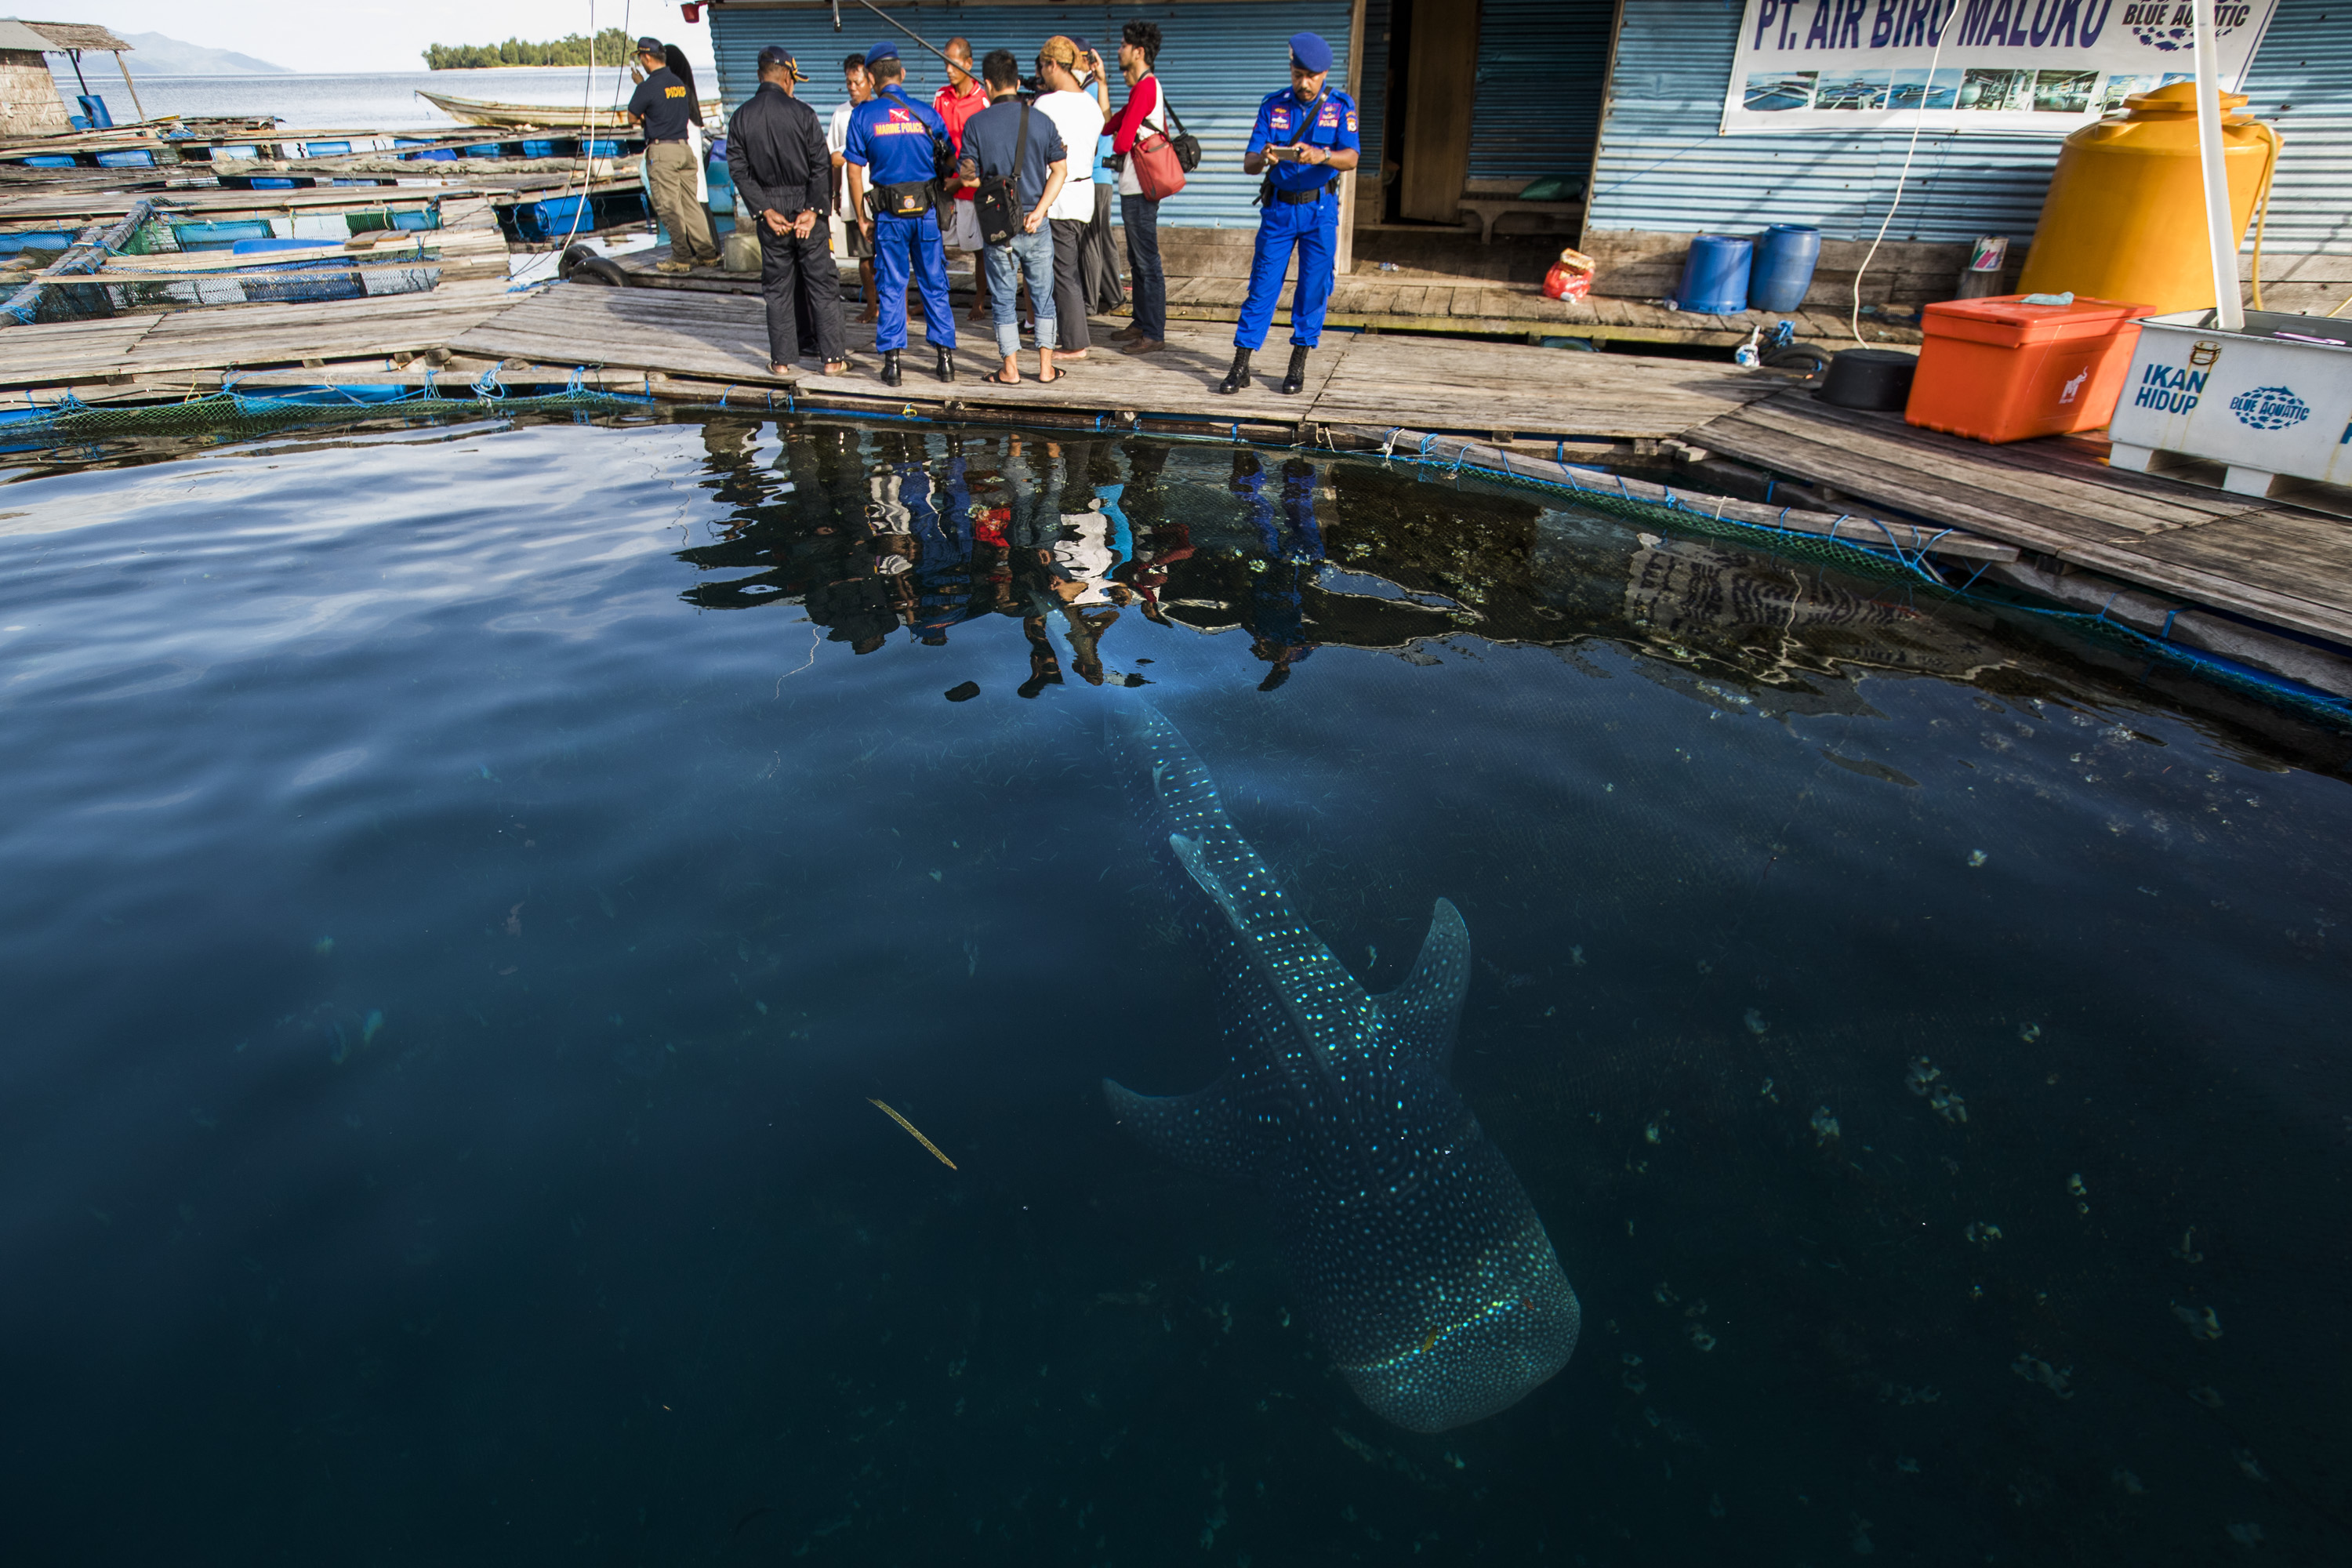 Satu dari dua ekor hiu paus (Rhincodon typus) yang ditangkap illegal di karamba jaring apung milik PT. Air Biru Maluku, di dekat Pulau Kasumba, Maluku. Sebelumnya, aparat menggerebeg tempat tersebut. Foto : Paul Hilton / WCS